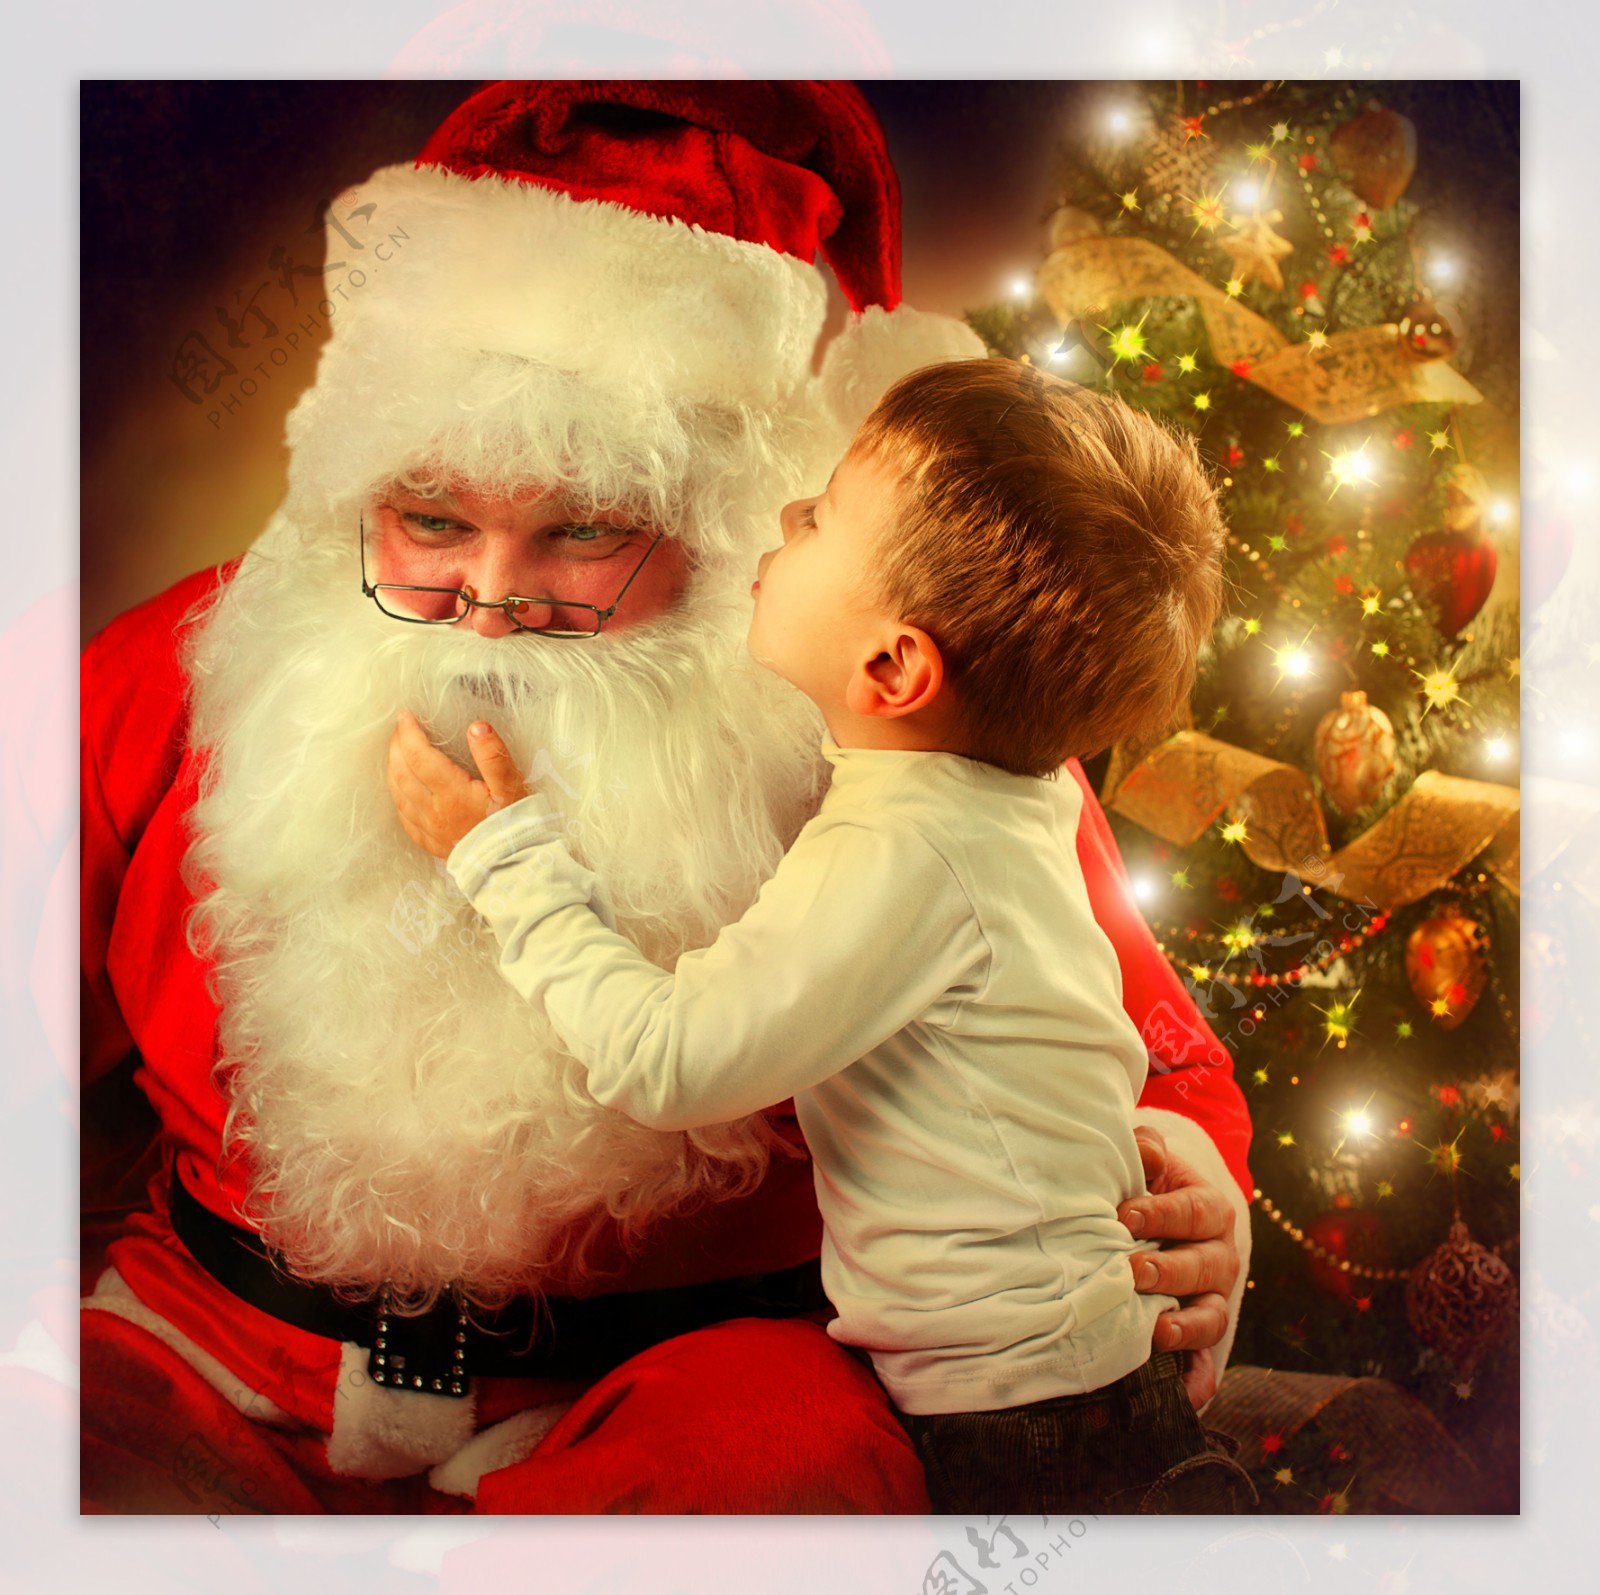 和圣诞老人说悄悄话的男孩图片